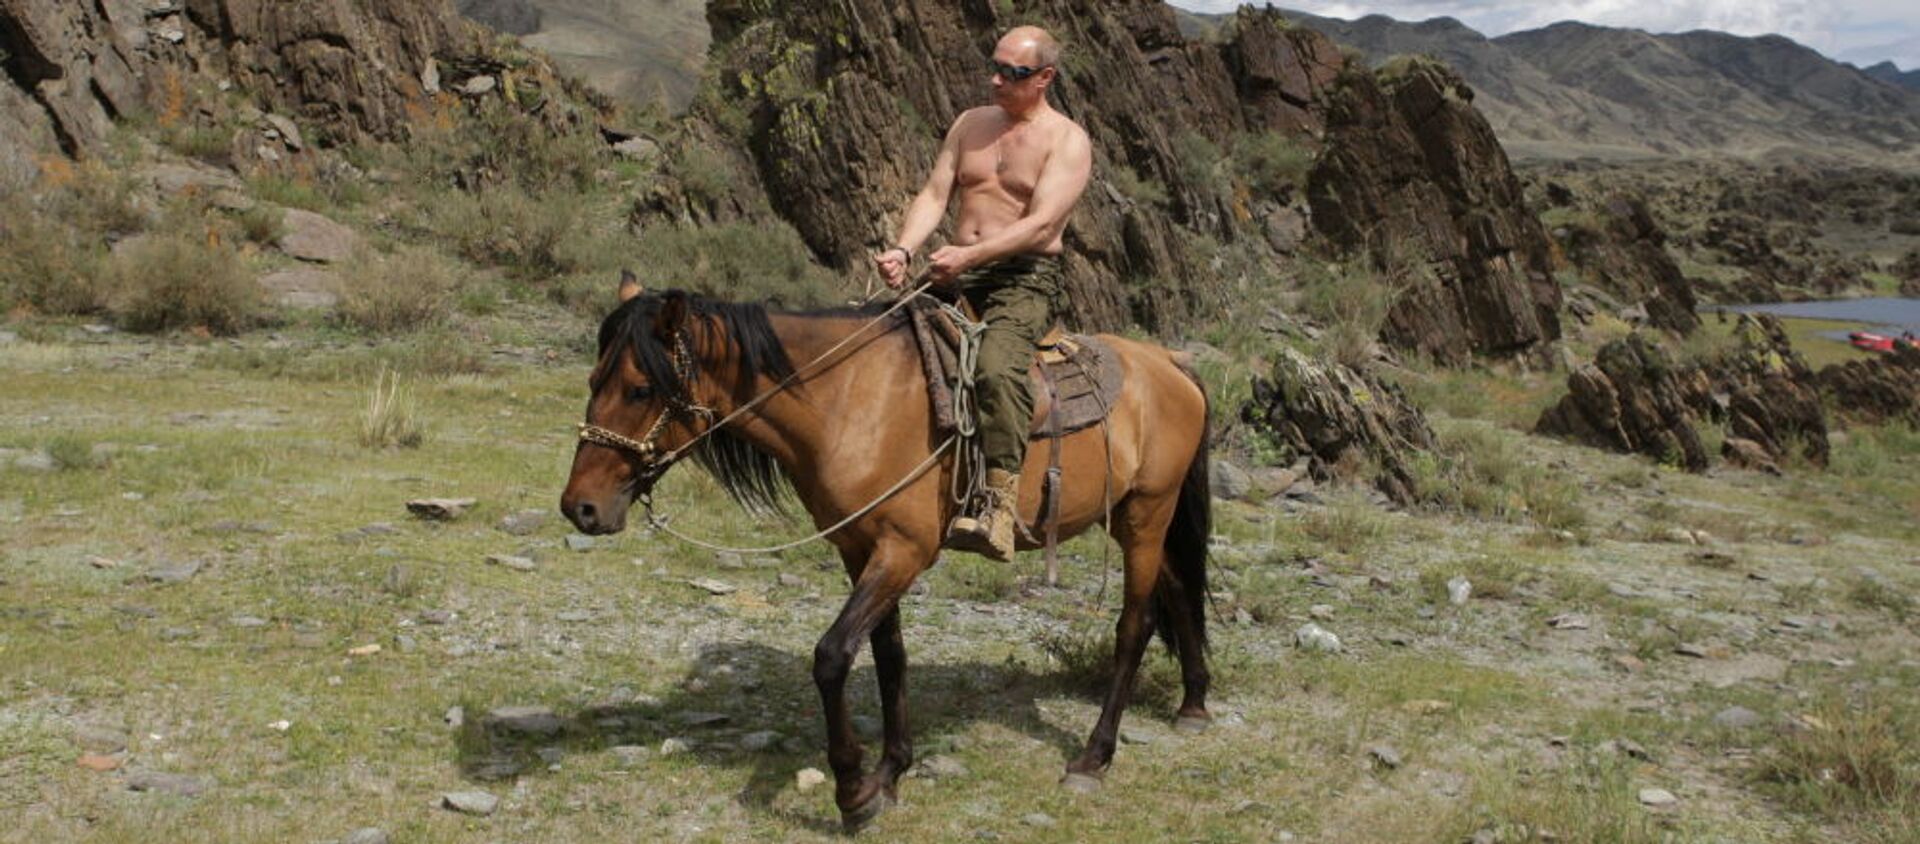 Премьер-министр РФ Владимир Путин во время поездки на лошади на отдыхе в Республике Тыва - Sputnik Абхазия, 1920, 06.10.2021